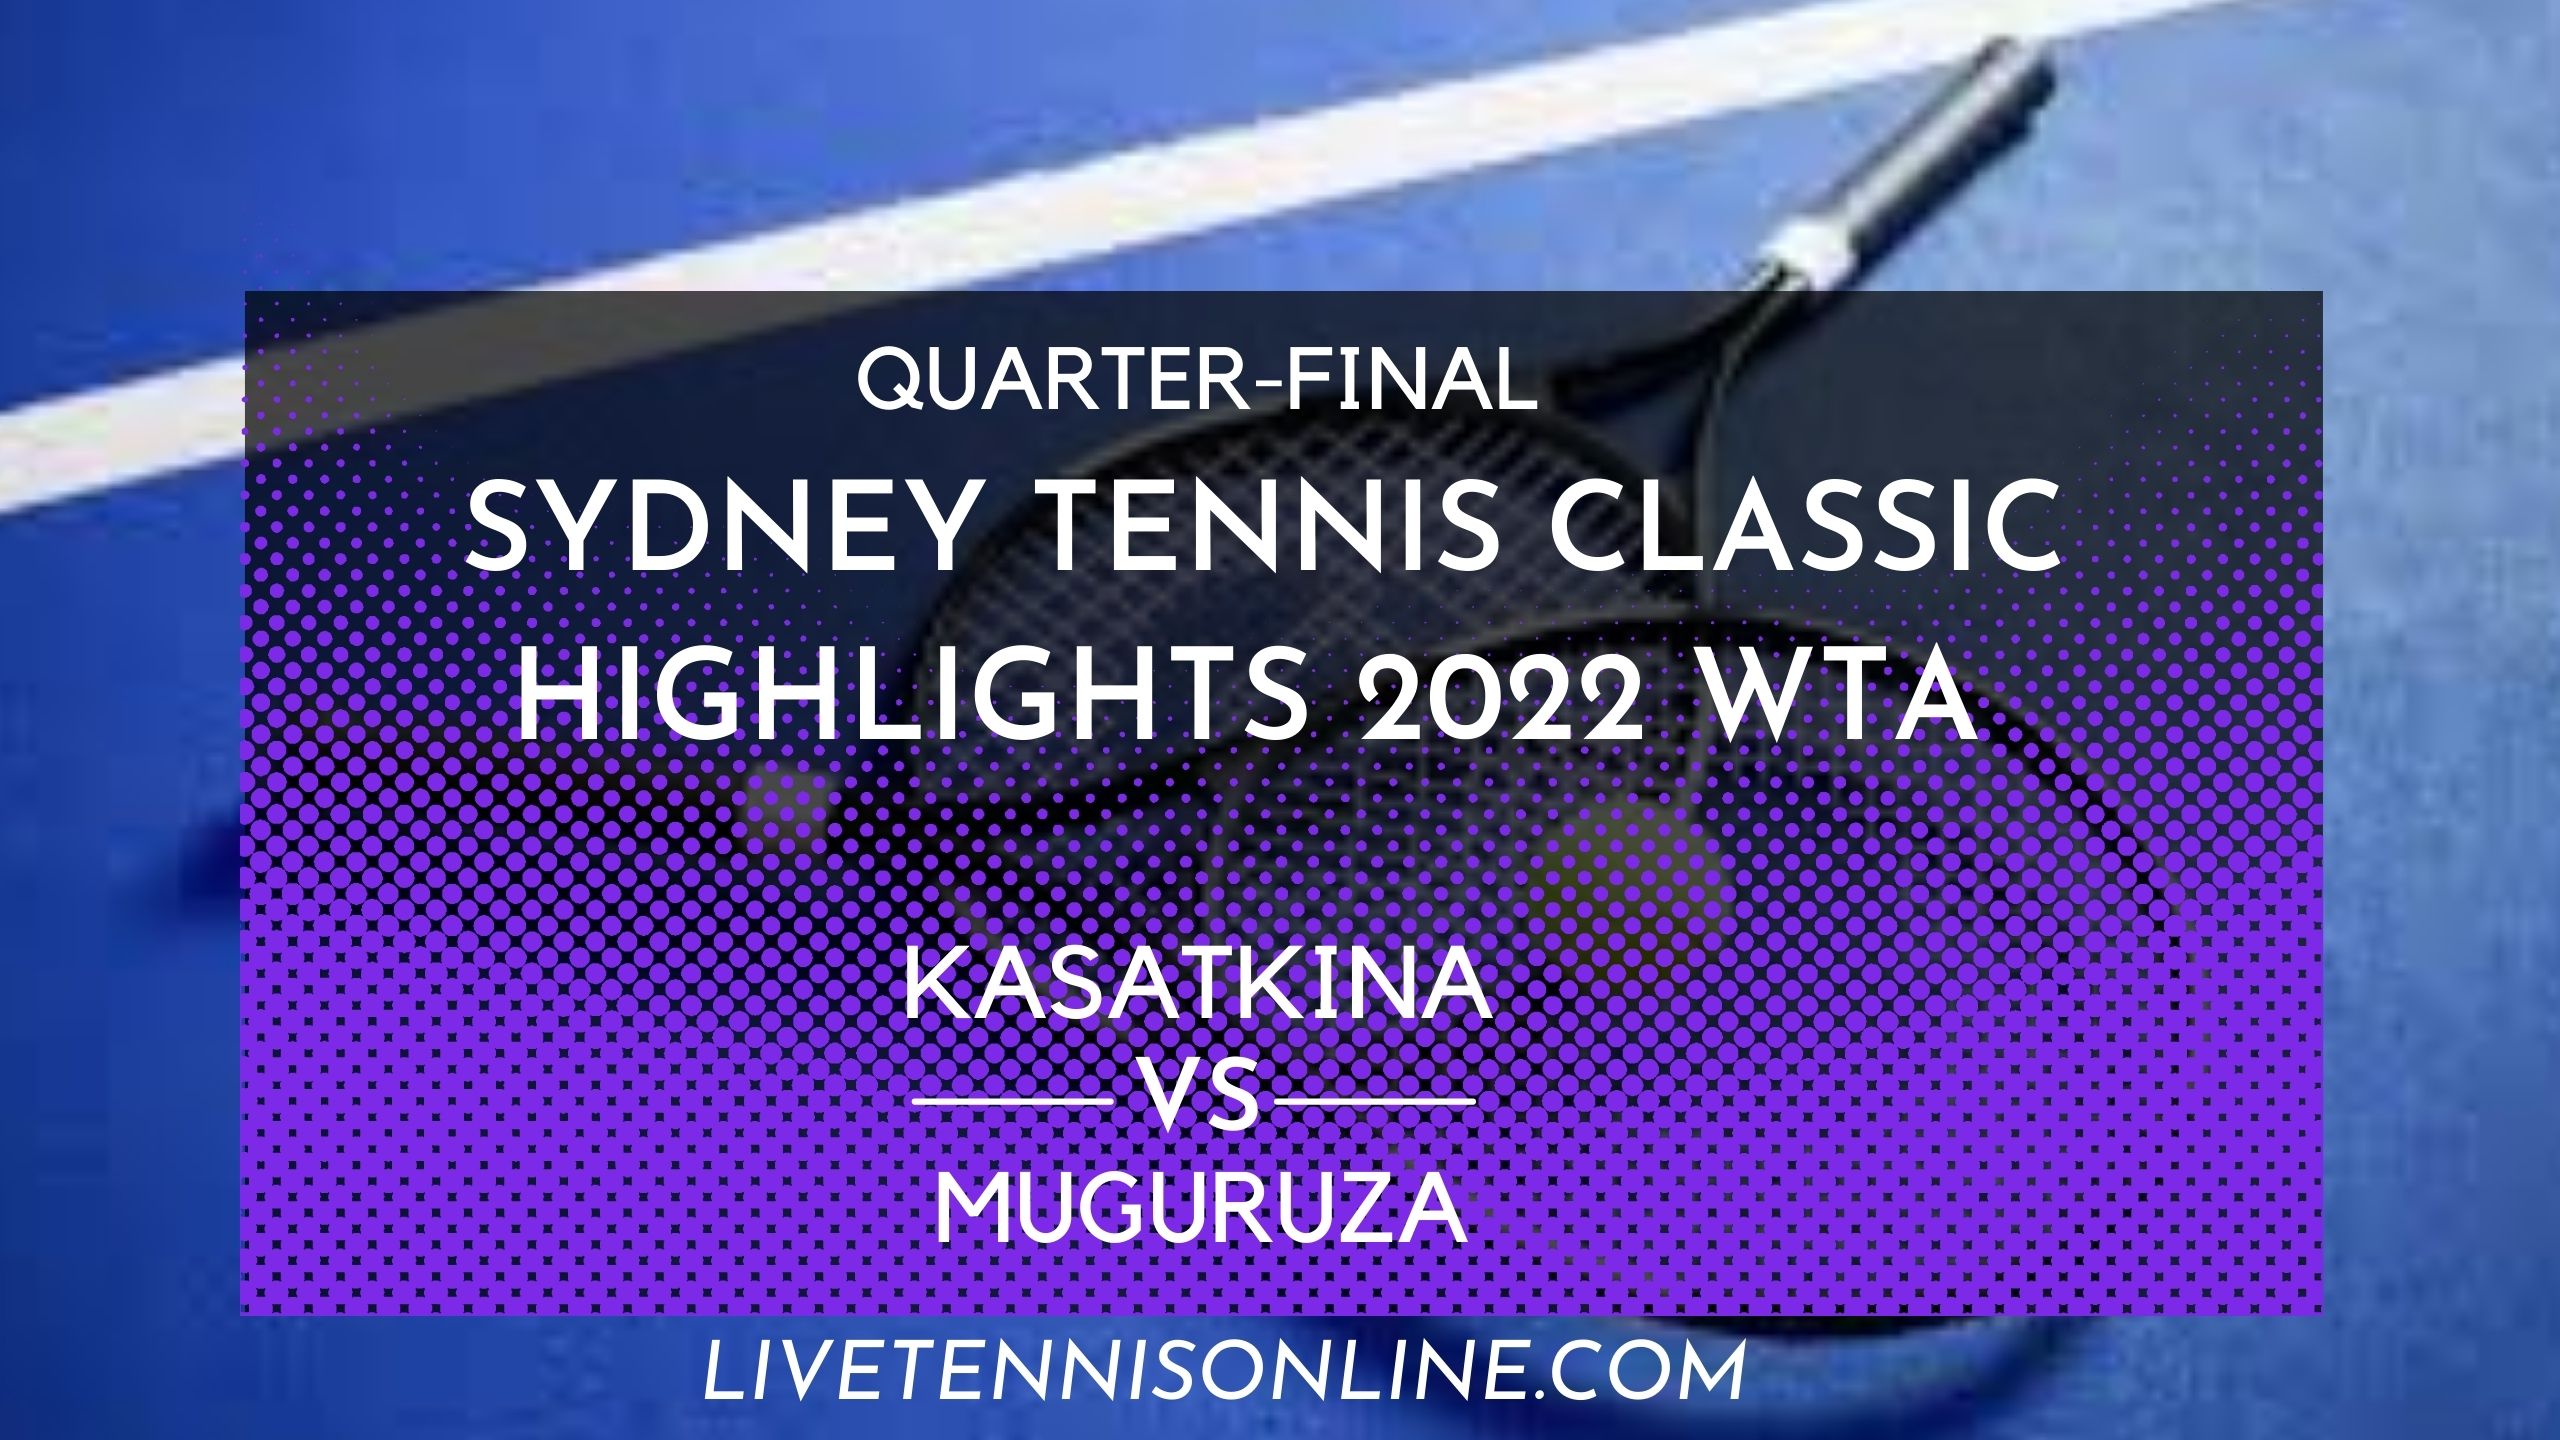 Kasatkina Vs Muguruza Q-F Highlights 2022 Sydney Tennis